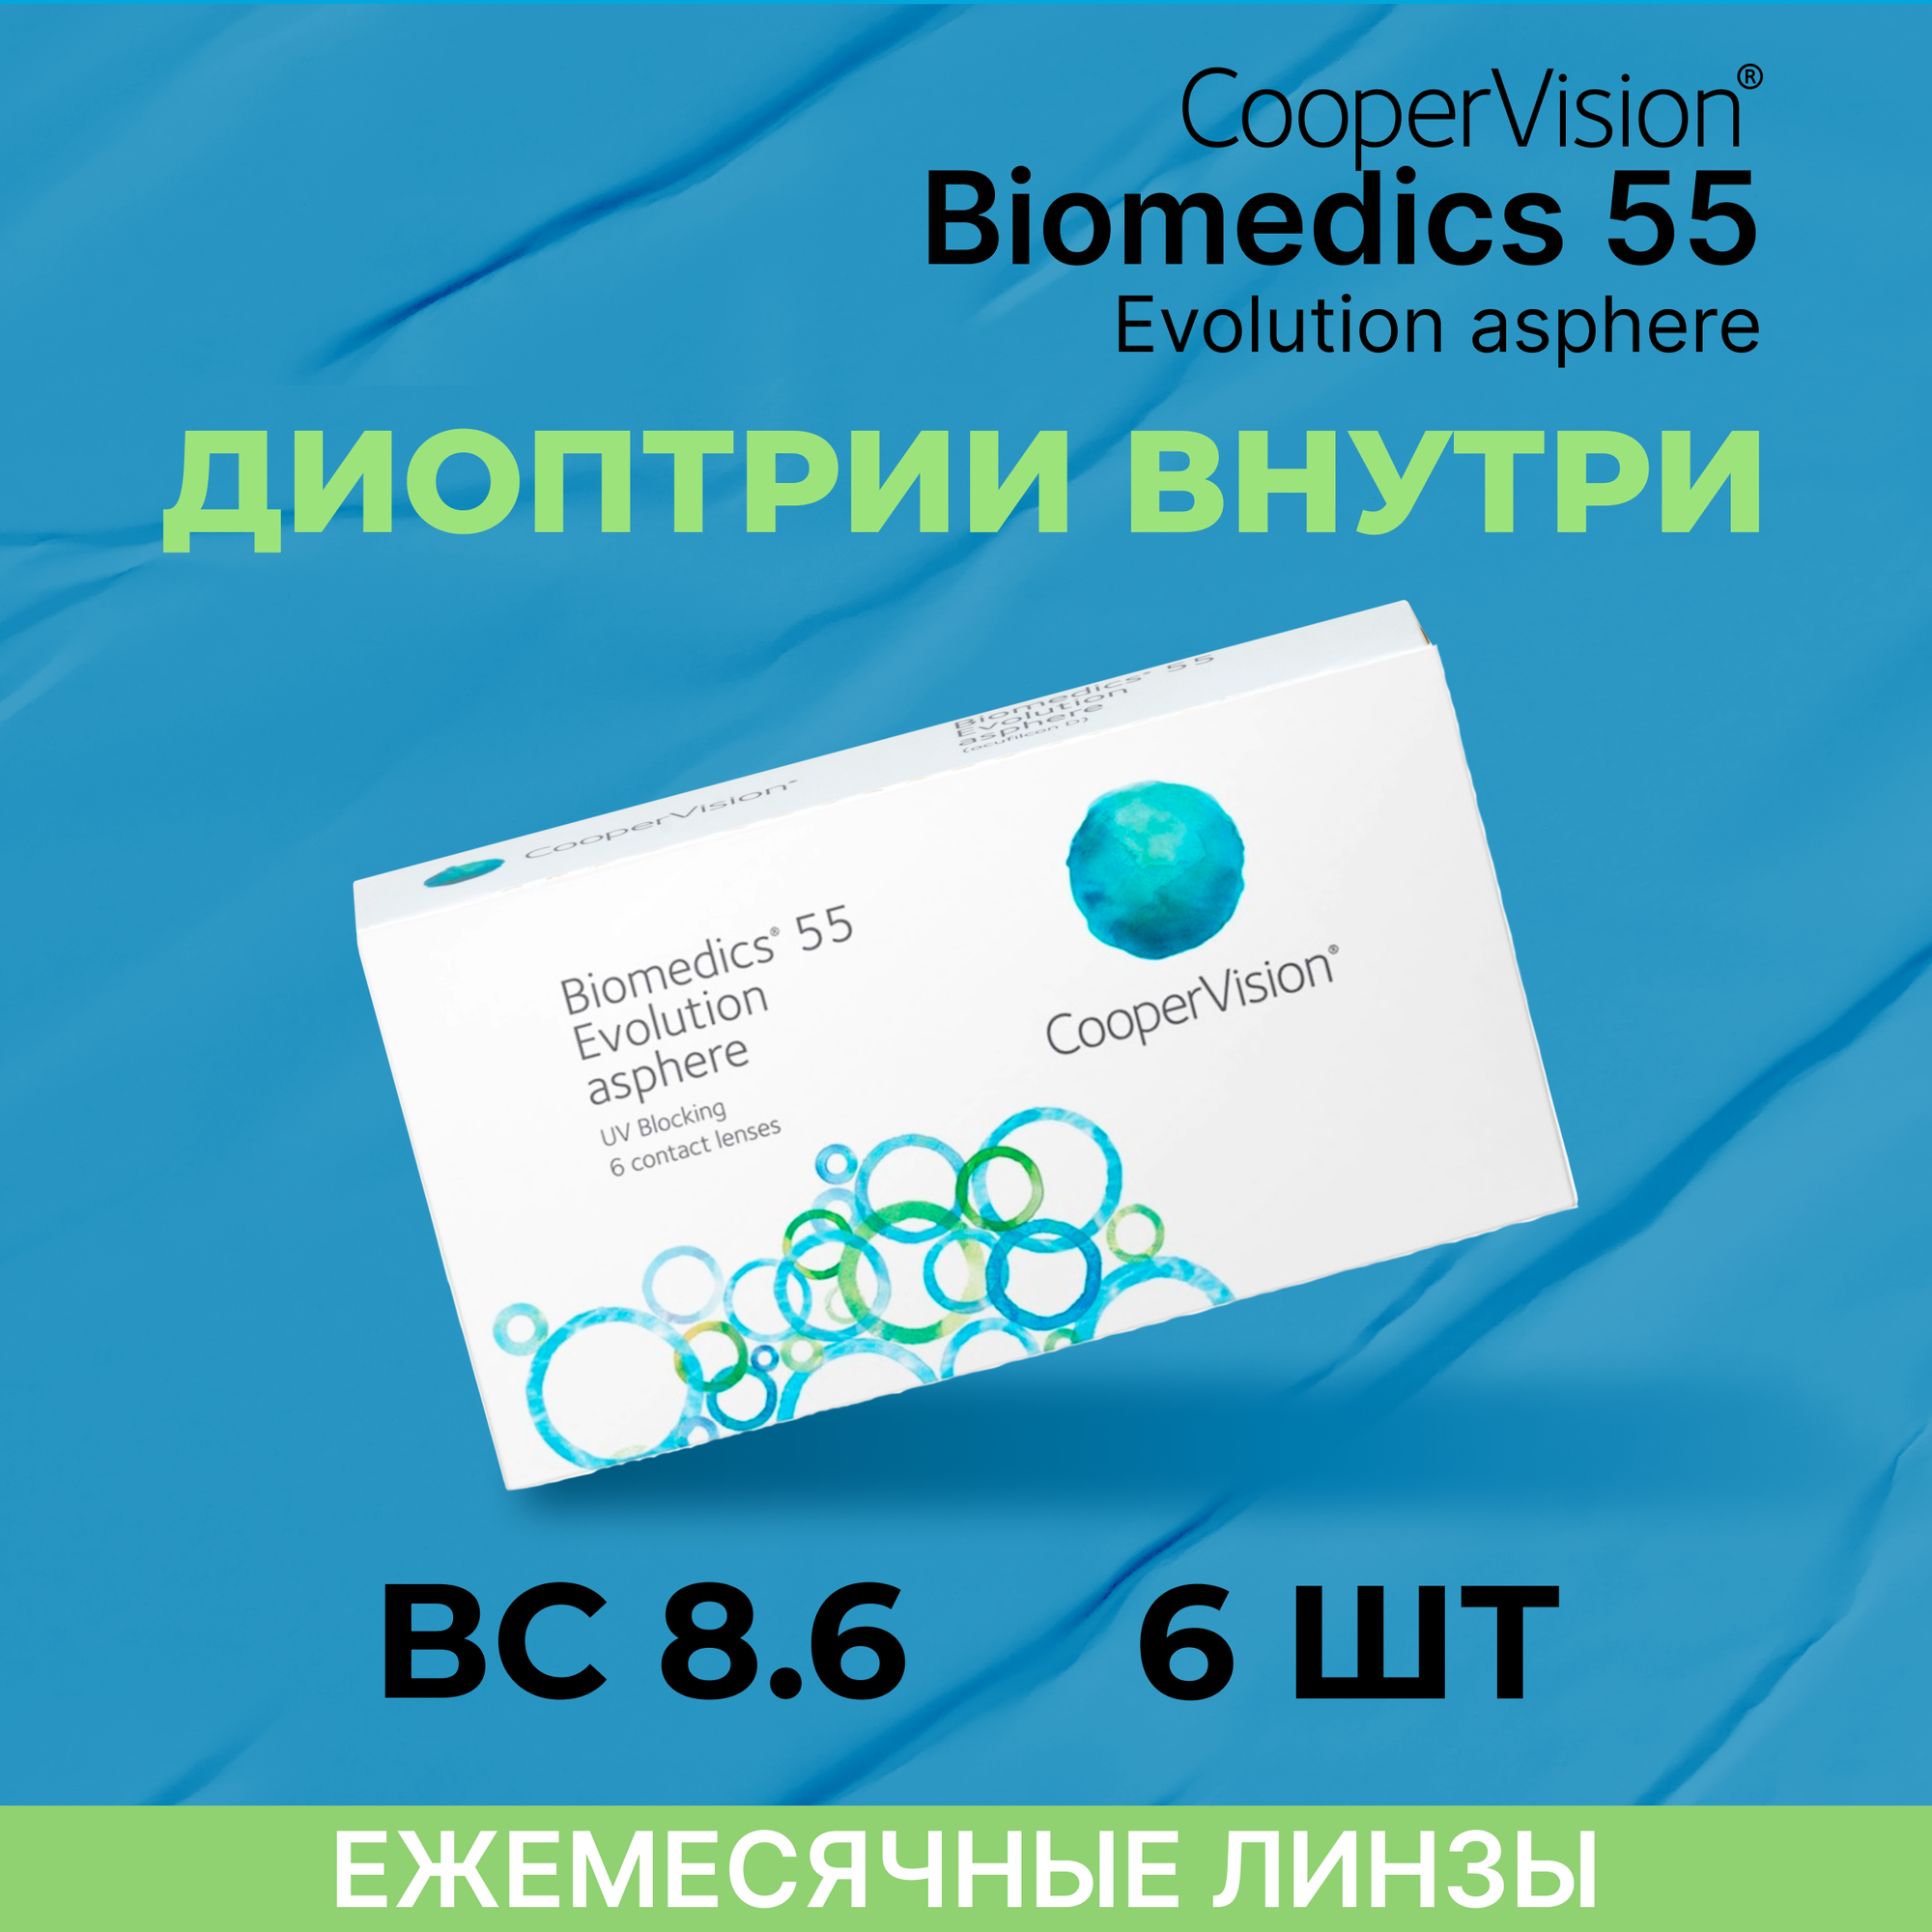 Контактные линзы CooperVision Biomedics 55 Evolution Asphere (6 линз) -6.50 R 8.9, ежемесячные, прозрачные